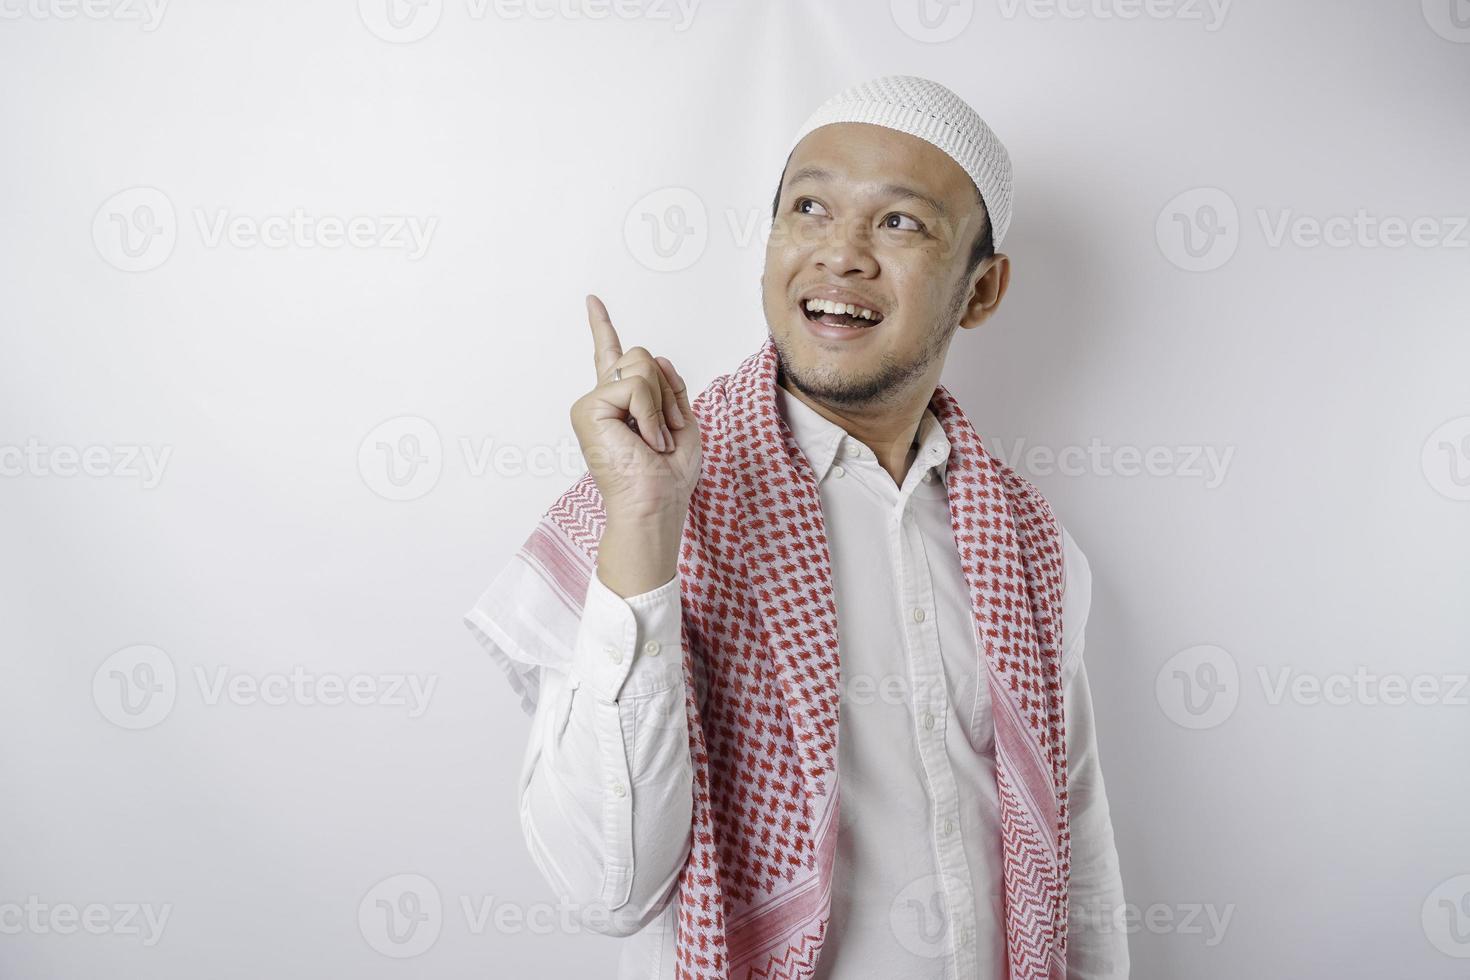 homme musulman asiatique excité pointant vers l'espace de copie à côté de lui, isolé sur fond blanc photo